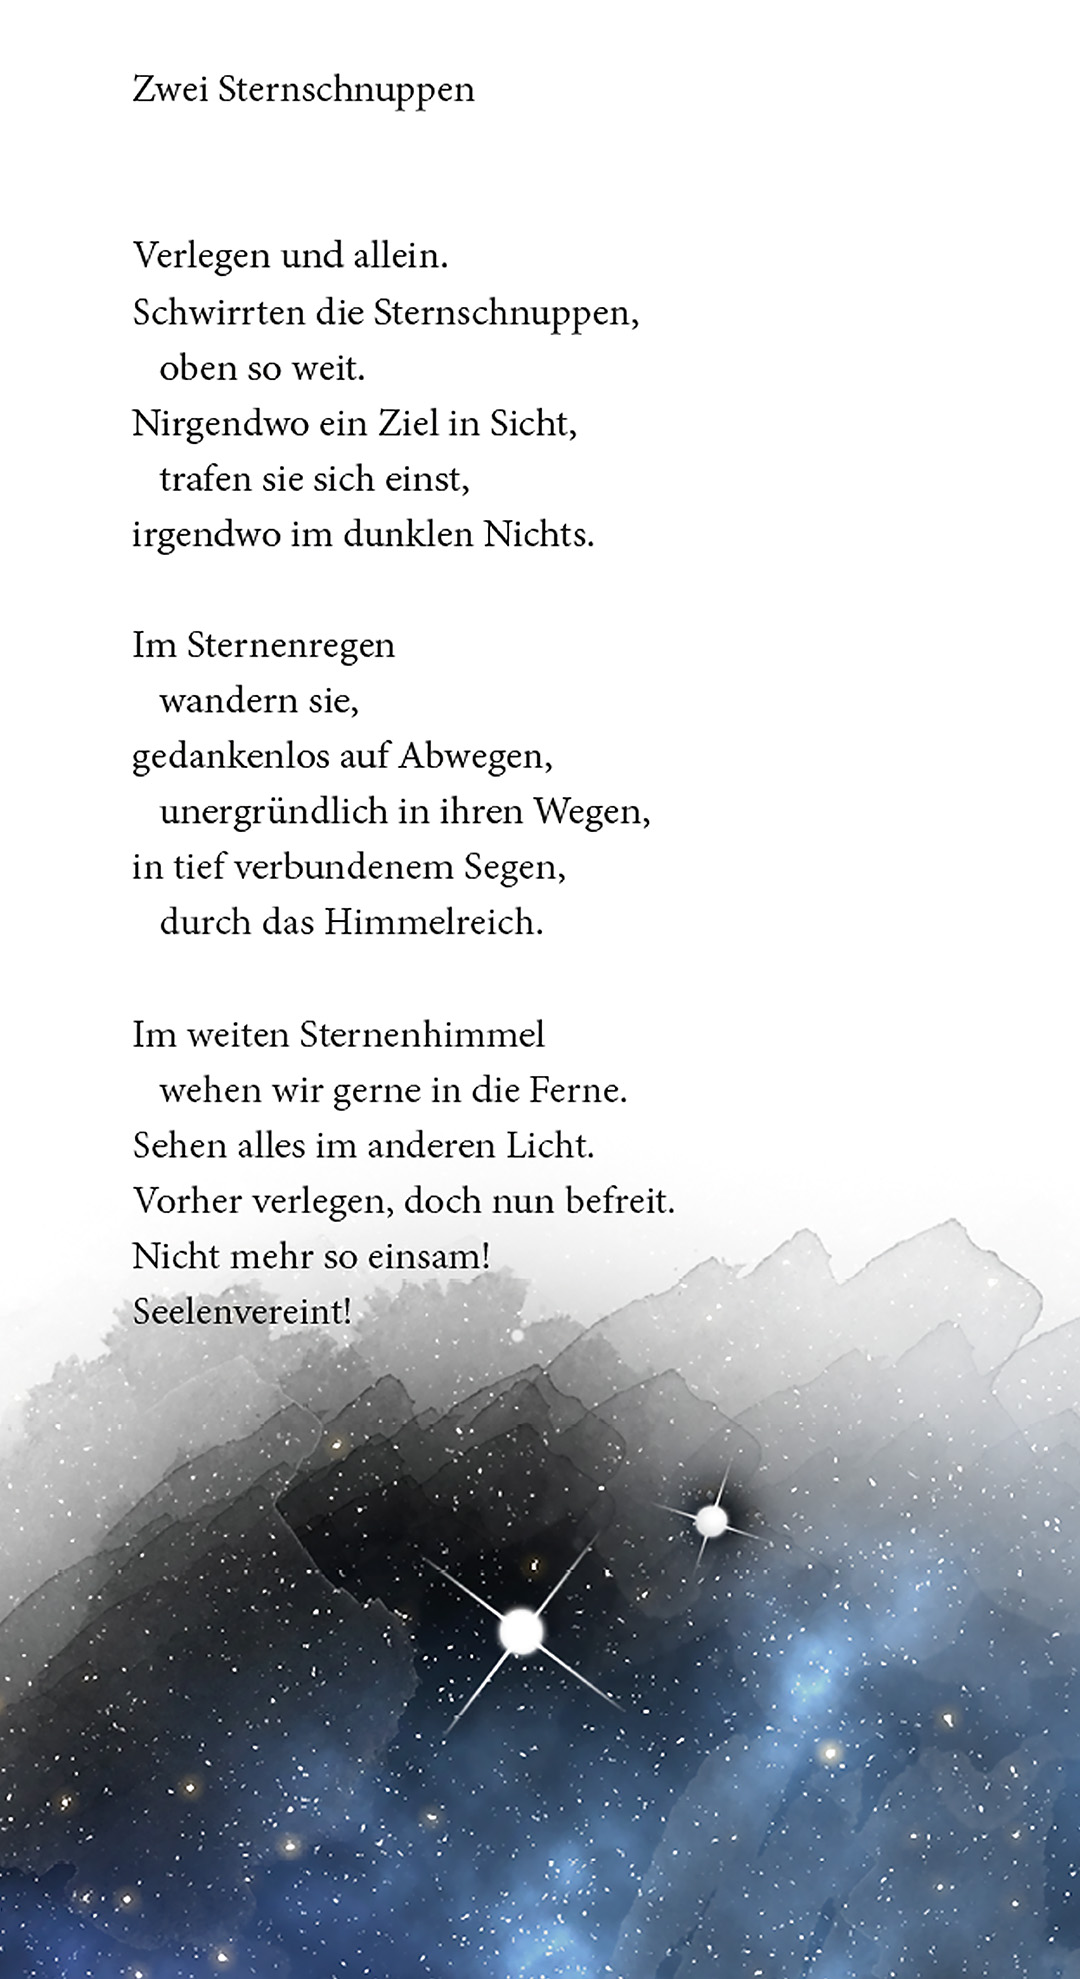 Auszug aus dem Gedicht "Zwei Sternschnuppen" von L.X.Wilhelm aus Nebelschatten und Herzenslicht